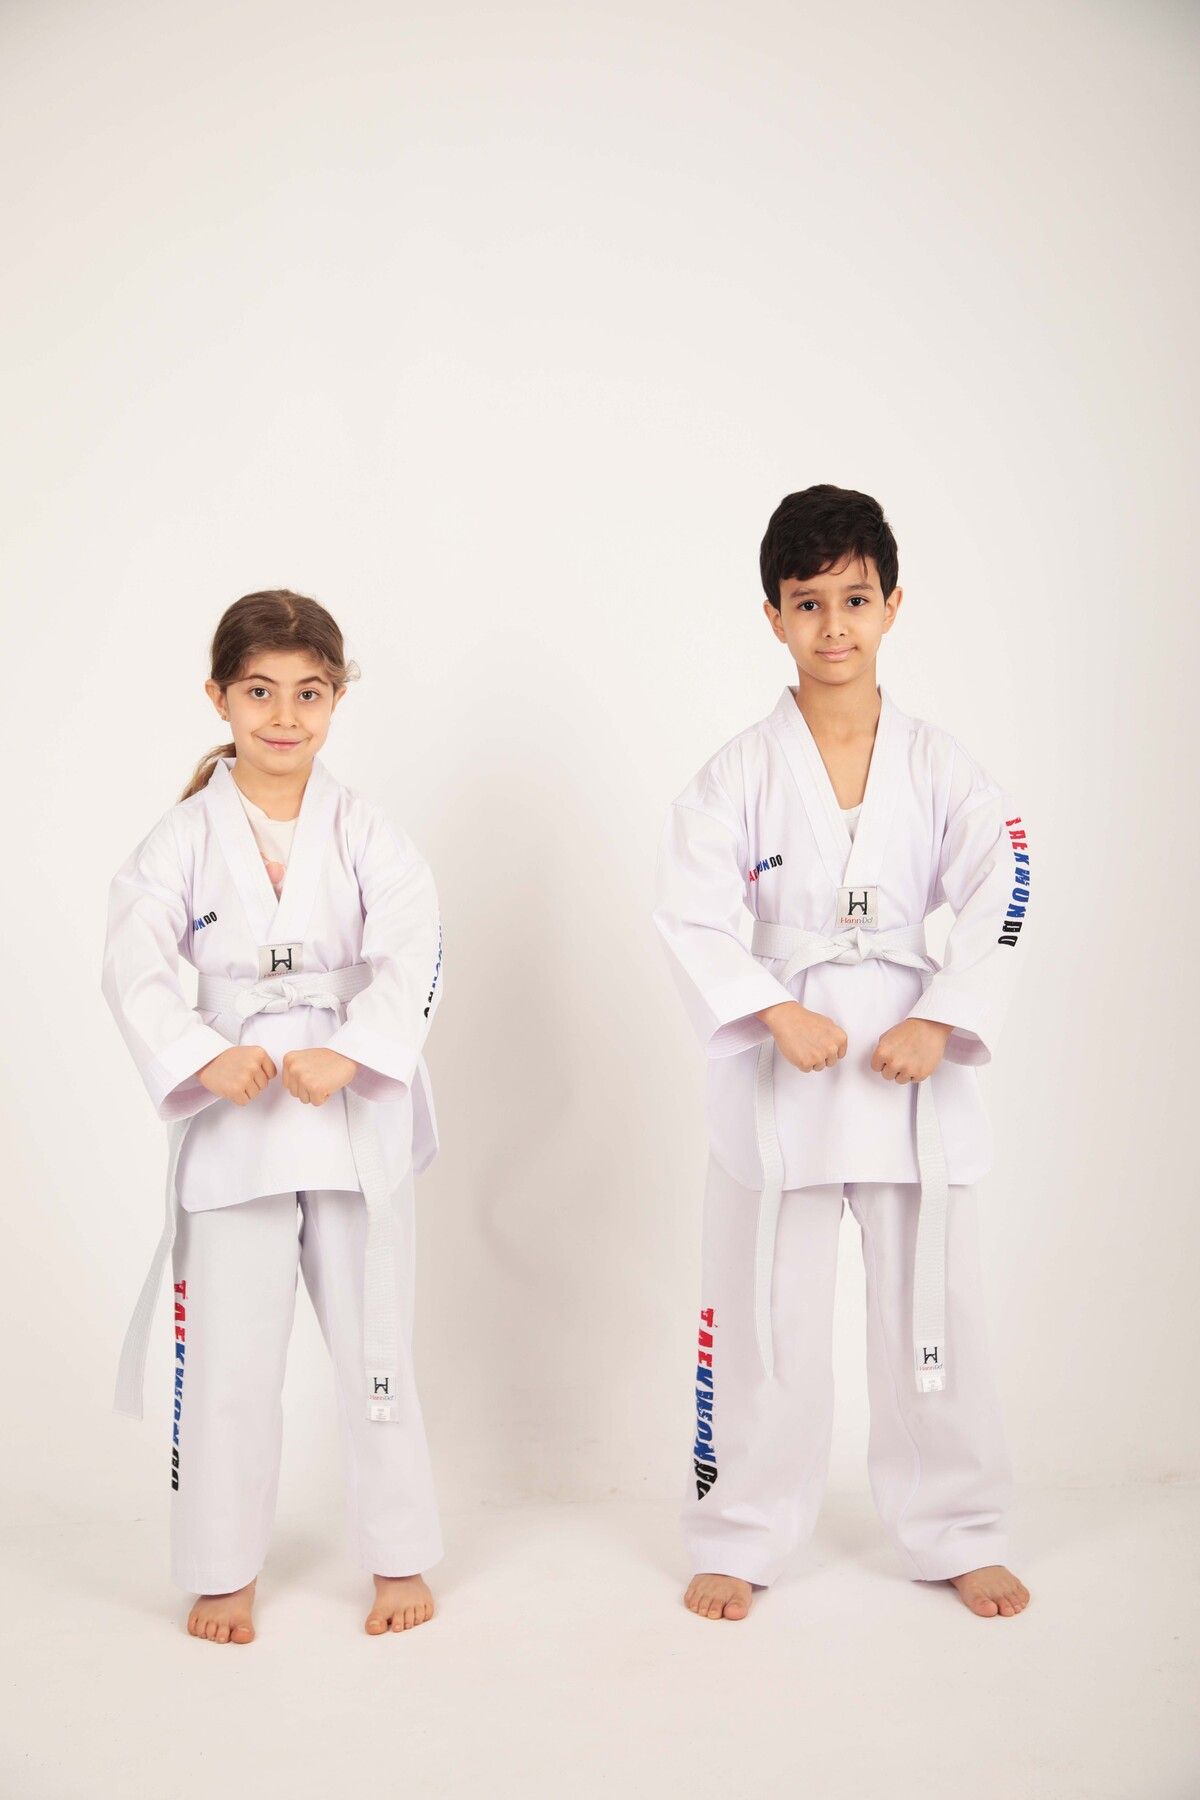 HANN DO Taekwondo/Tekvando Acemi Elbise Kıyafeti (Dobok) Beyaz Yaka Unisex